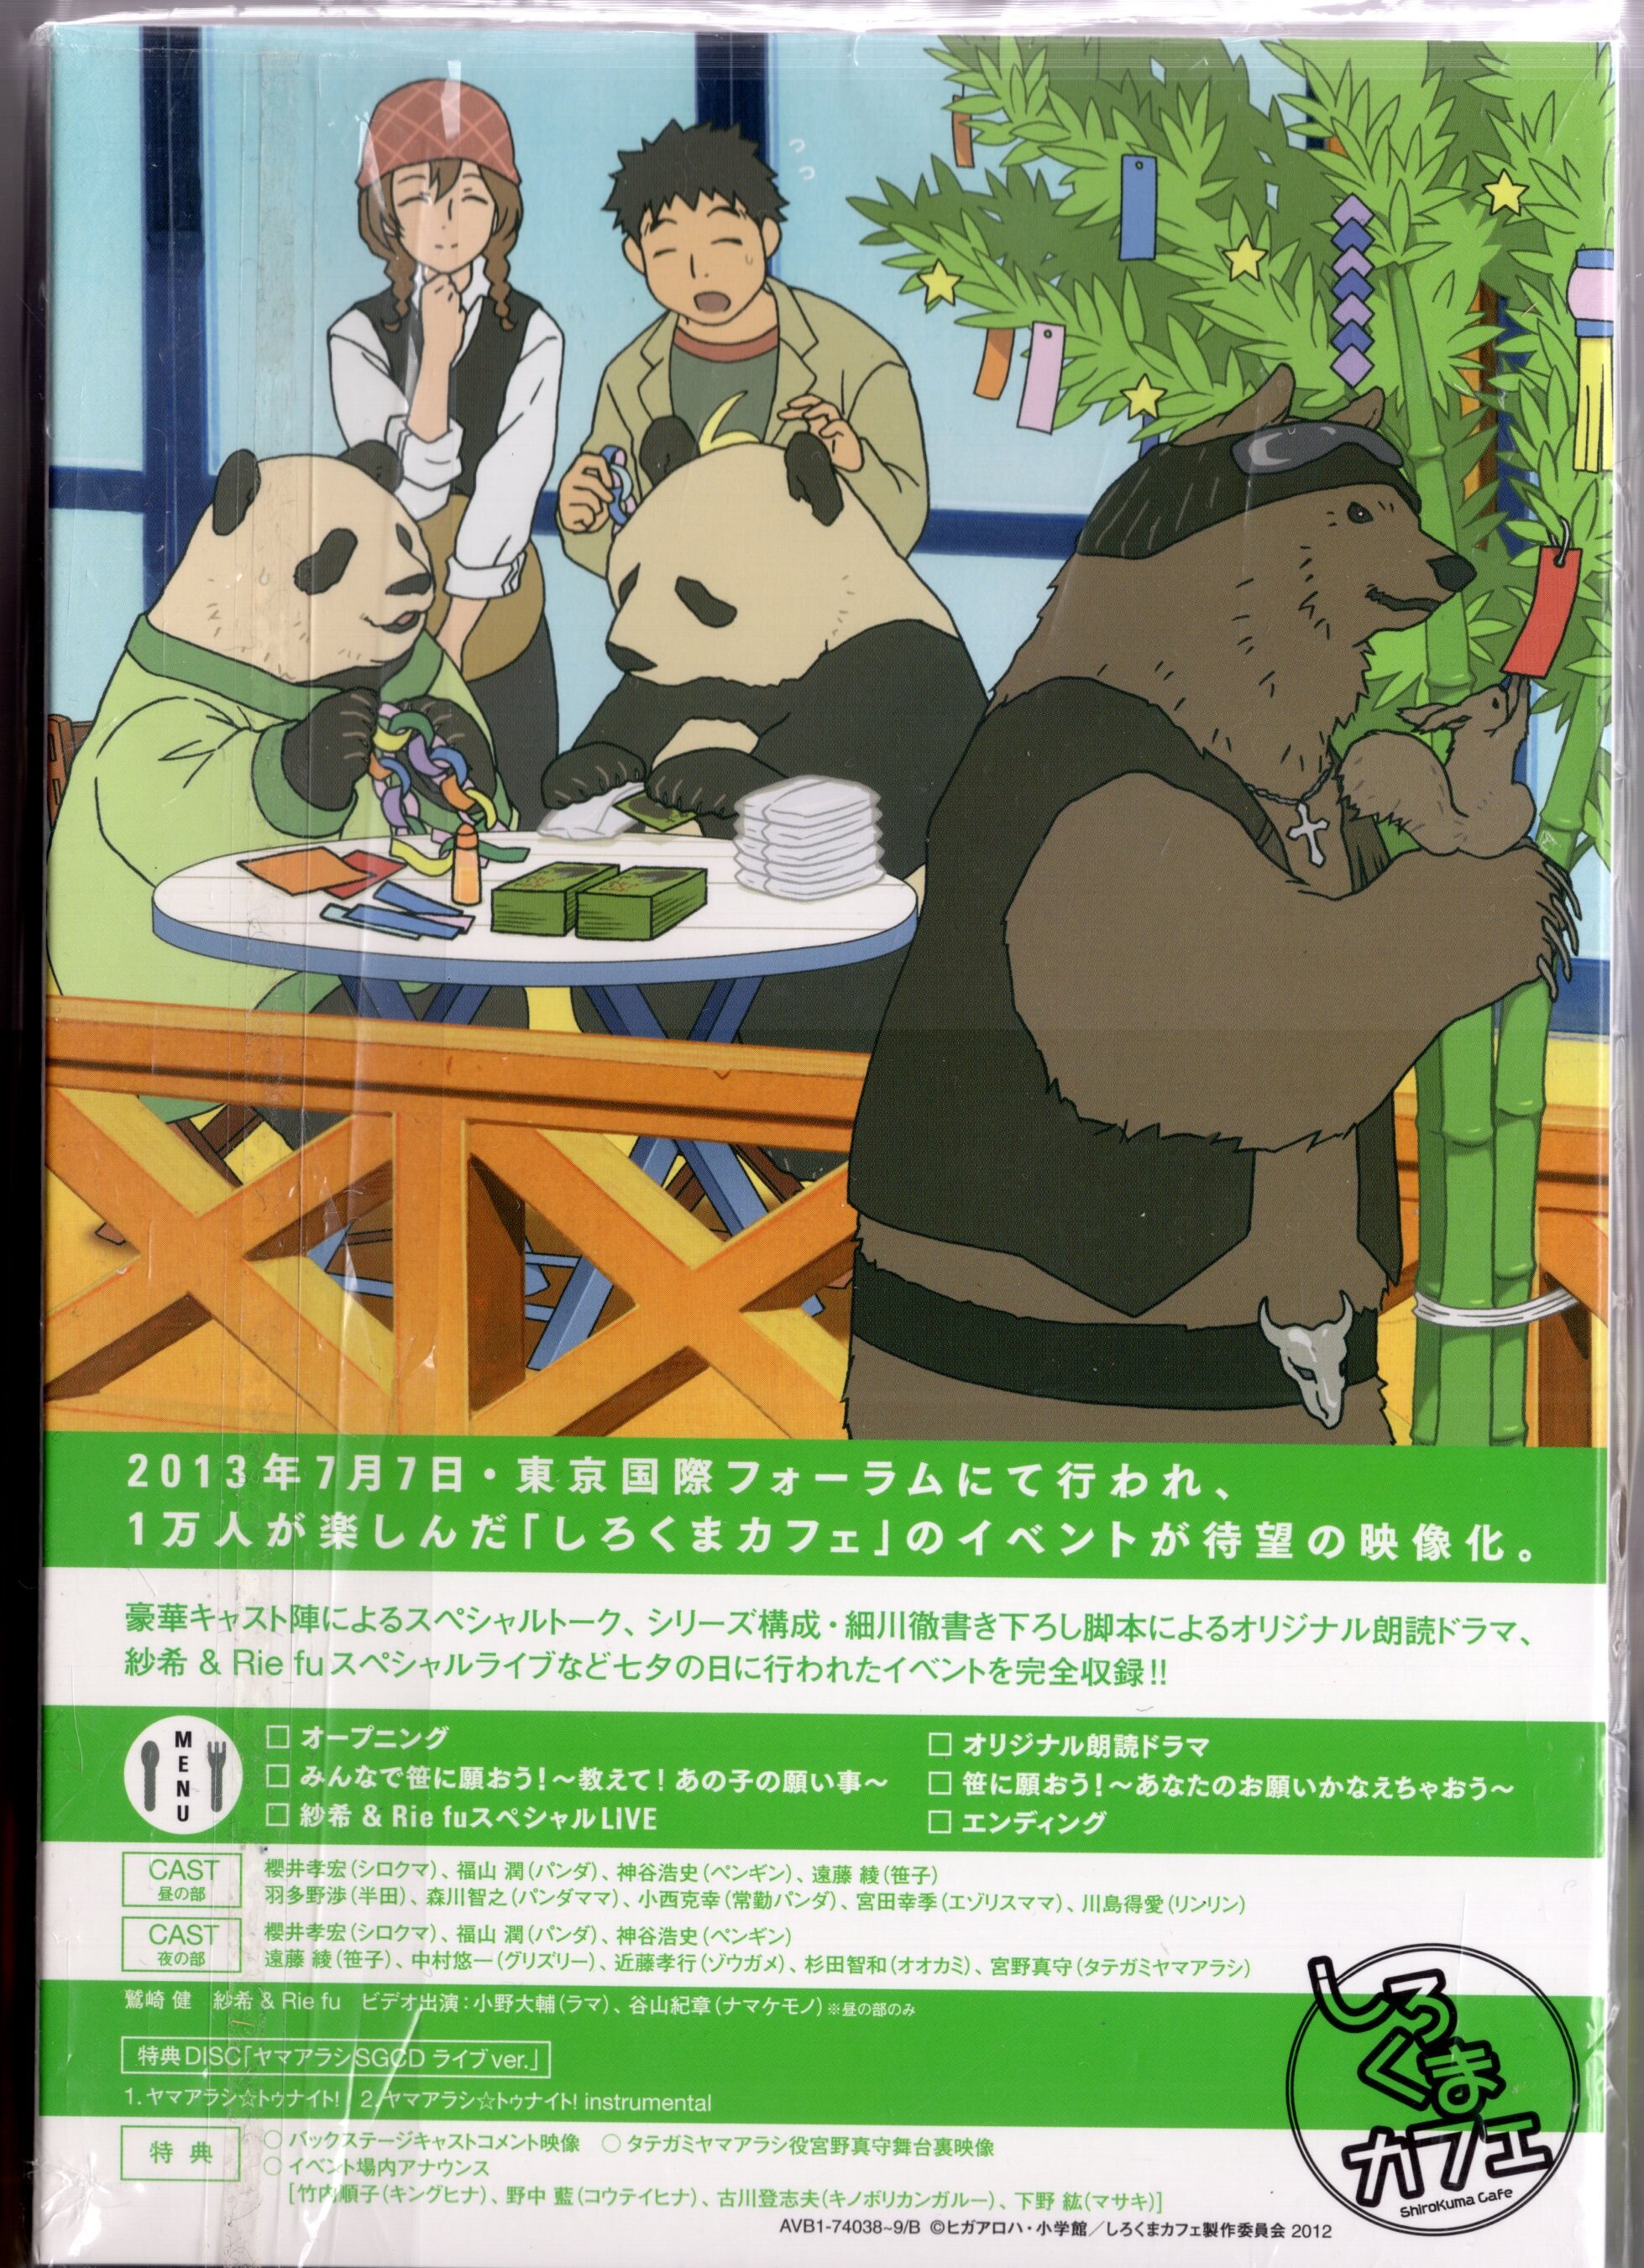 しろくまカフェ cafe.7 [DVD] i8my1cf